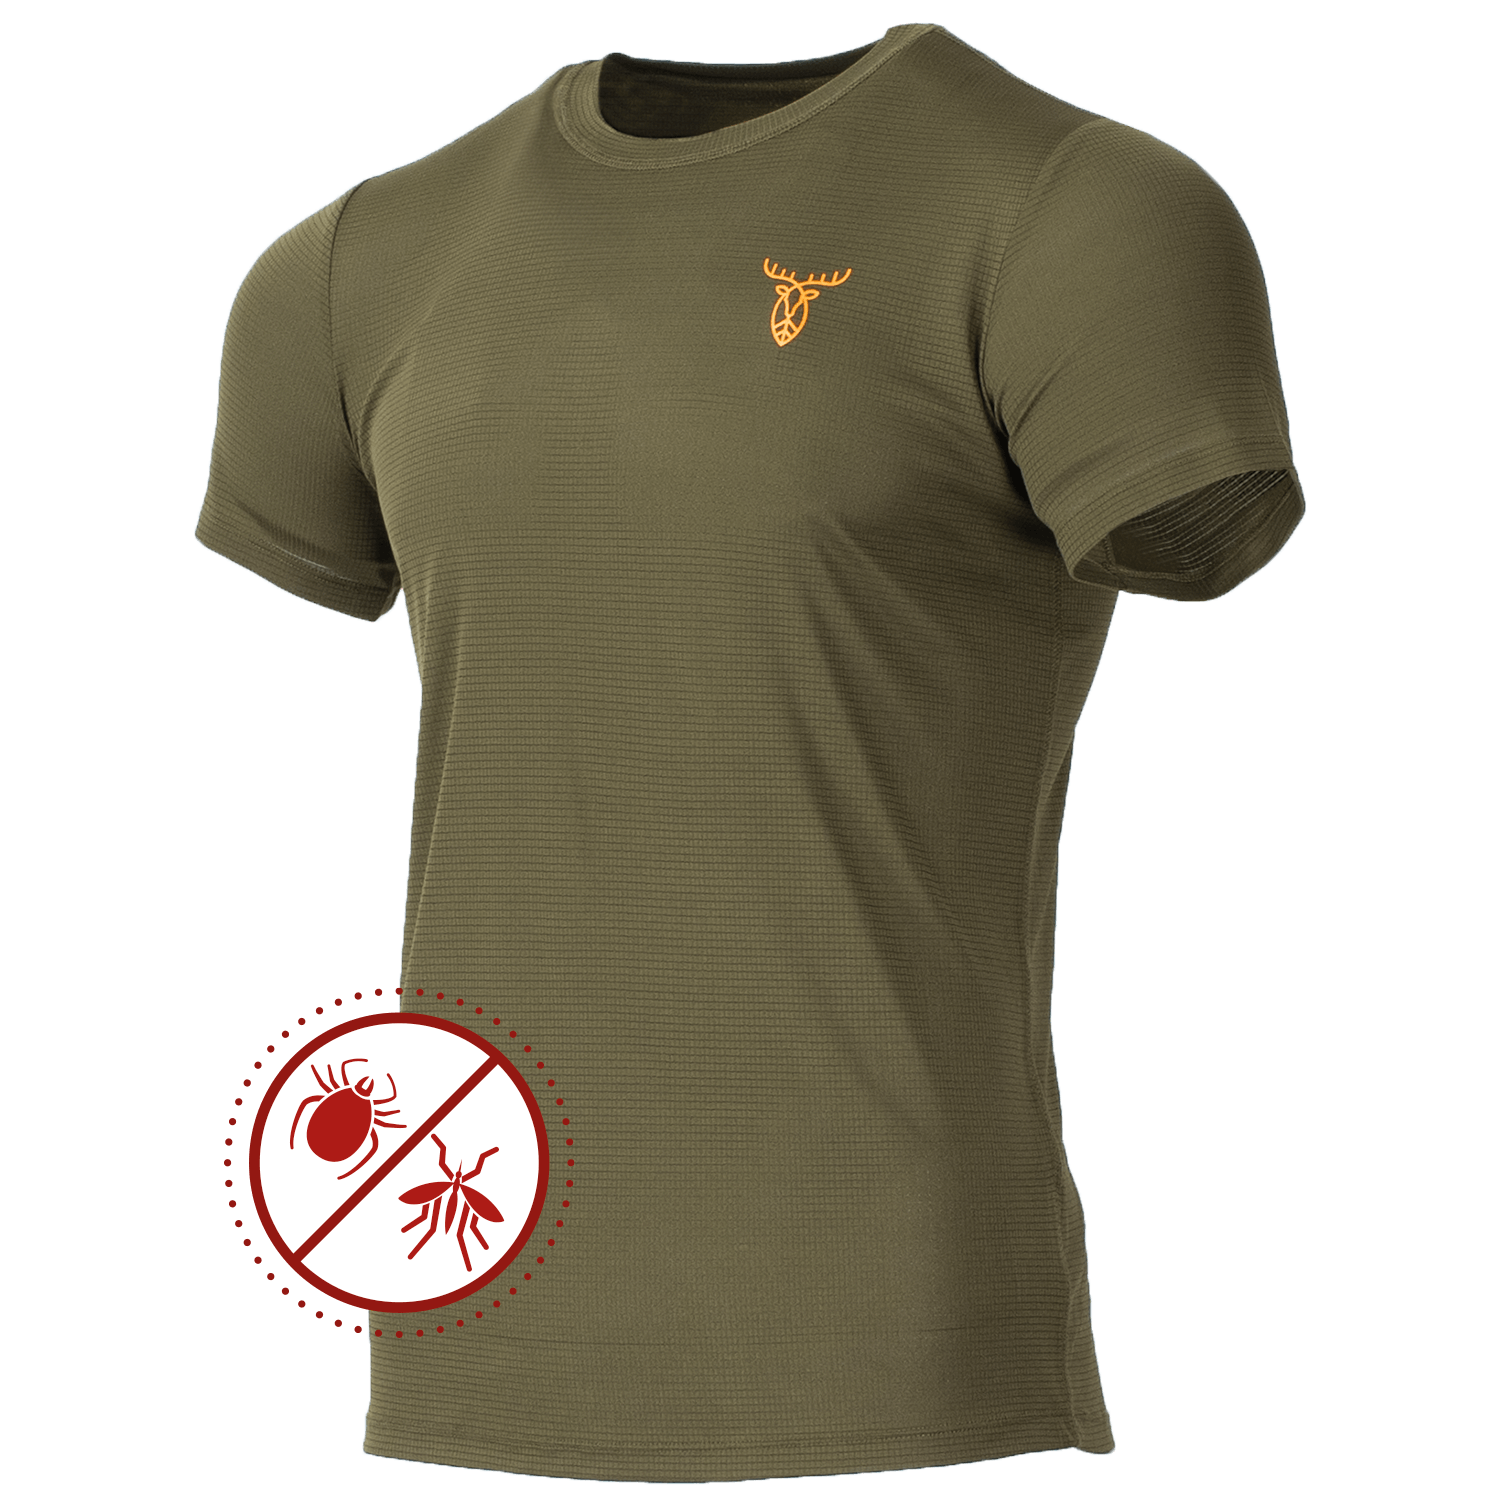 Pirscher Gear Ultralight Tanatex T-Shirt - T-Shirts